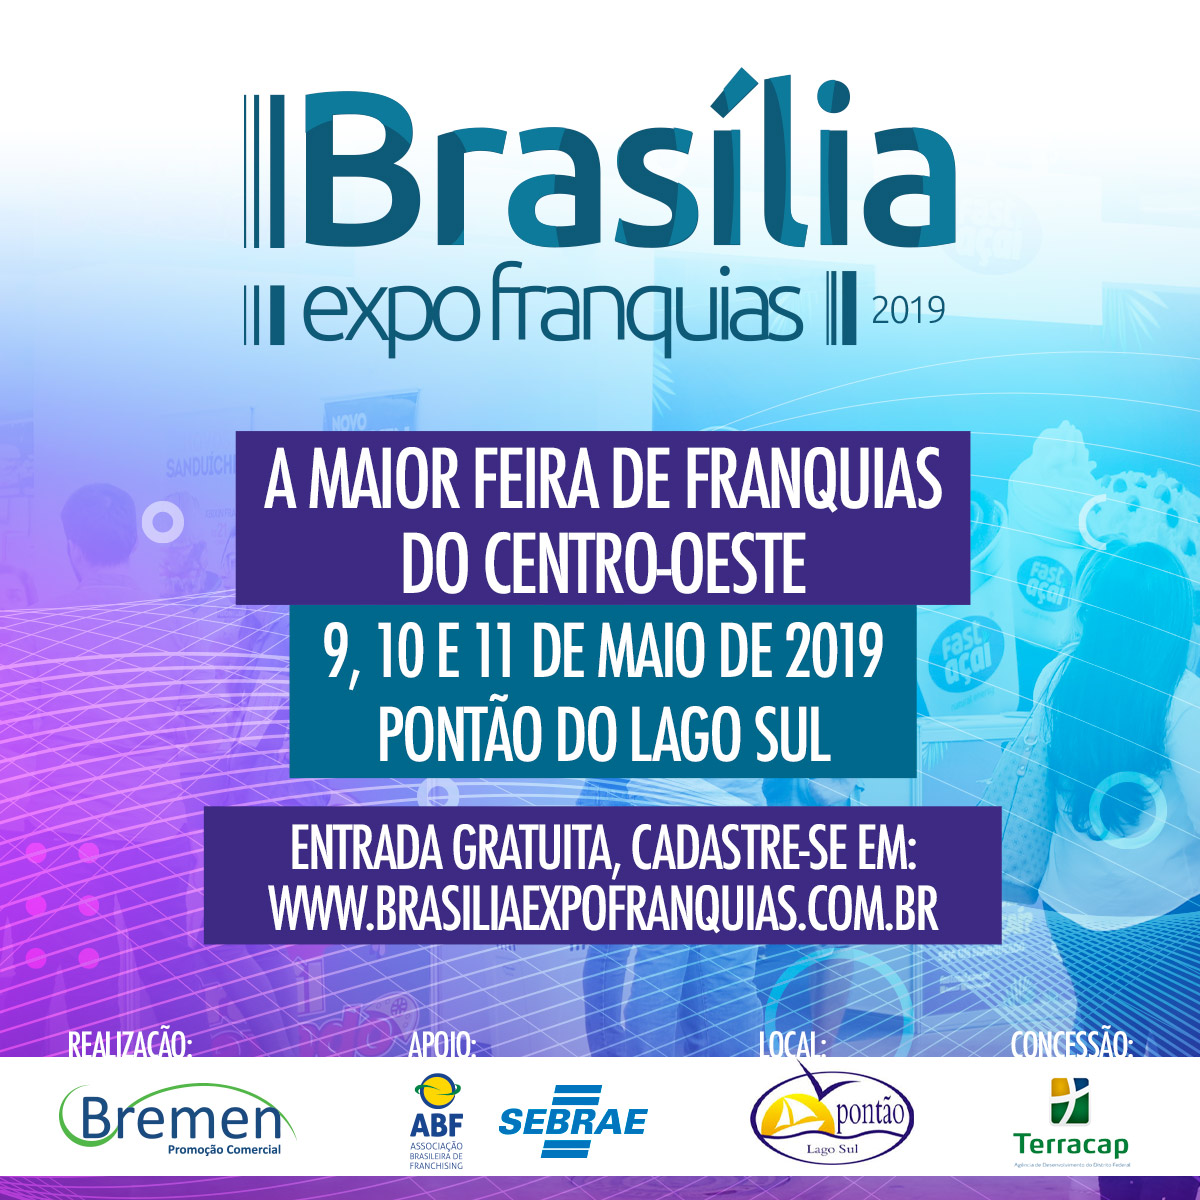 PONTÃO RECEBE A 6ª EDIÇÃO DA BRASÍLIA EXPO FRANQUIAS